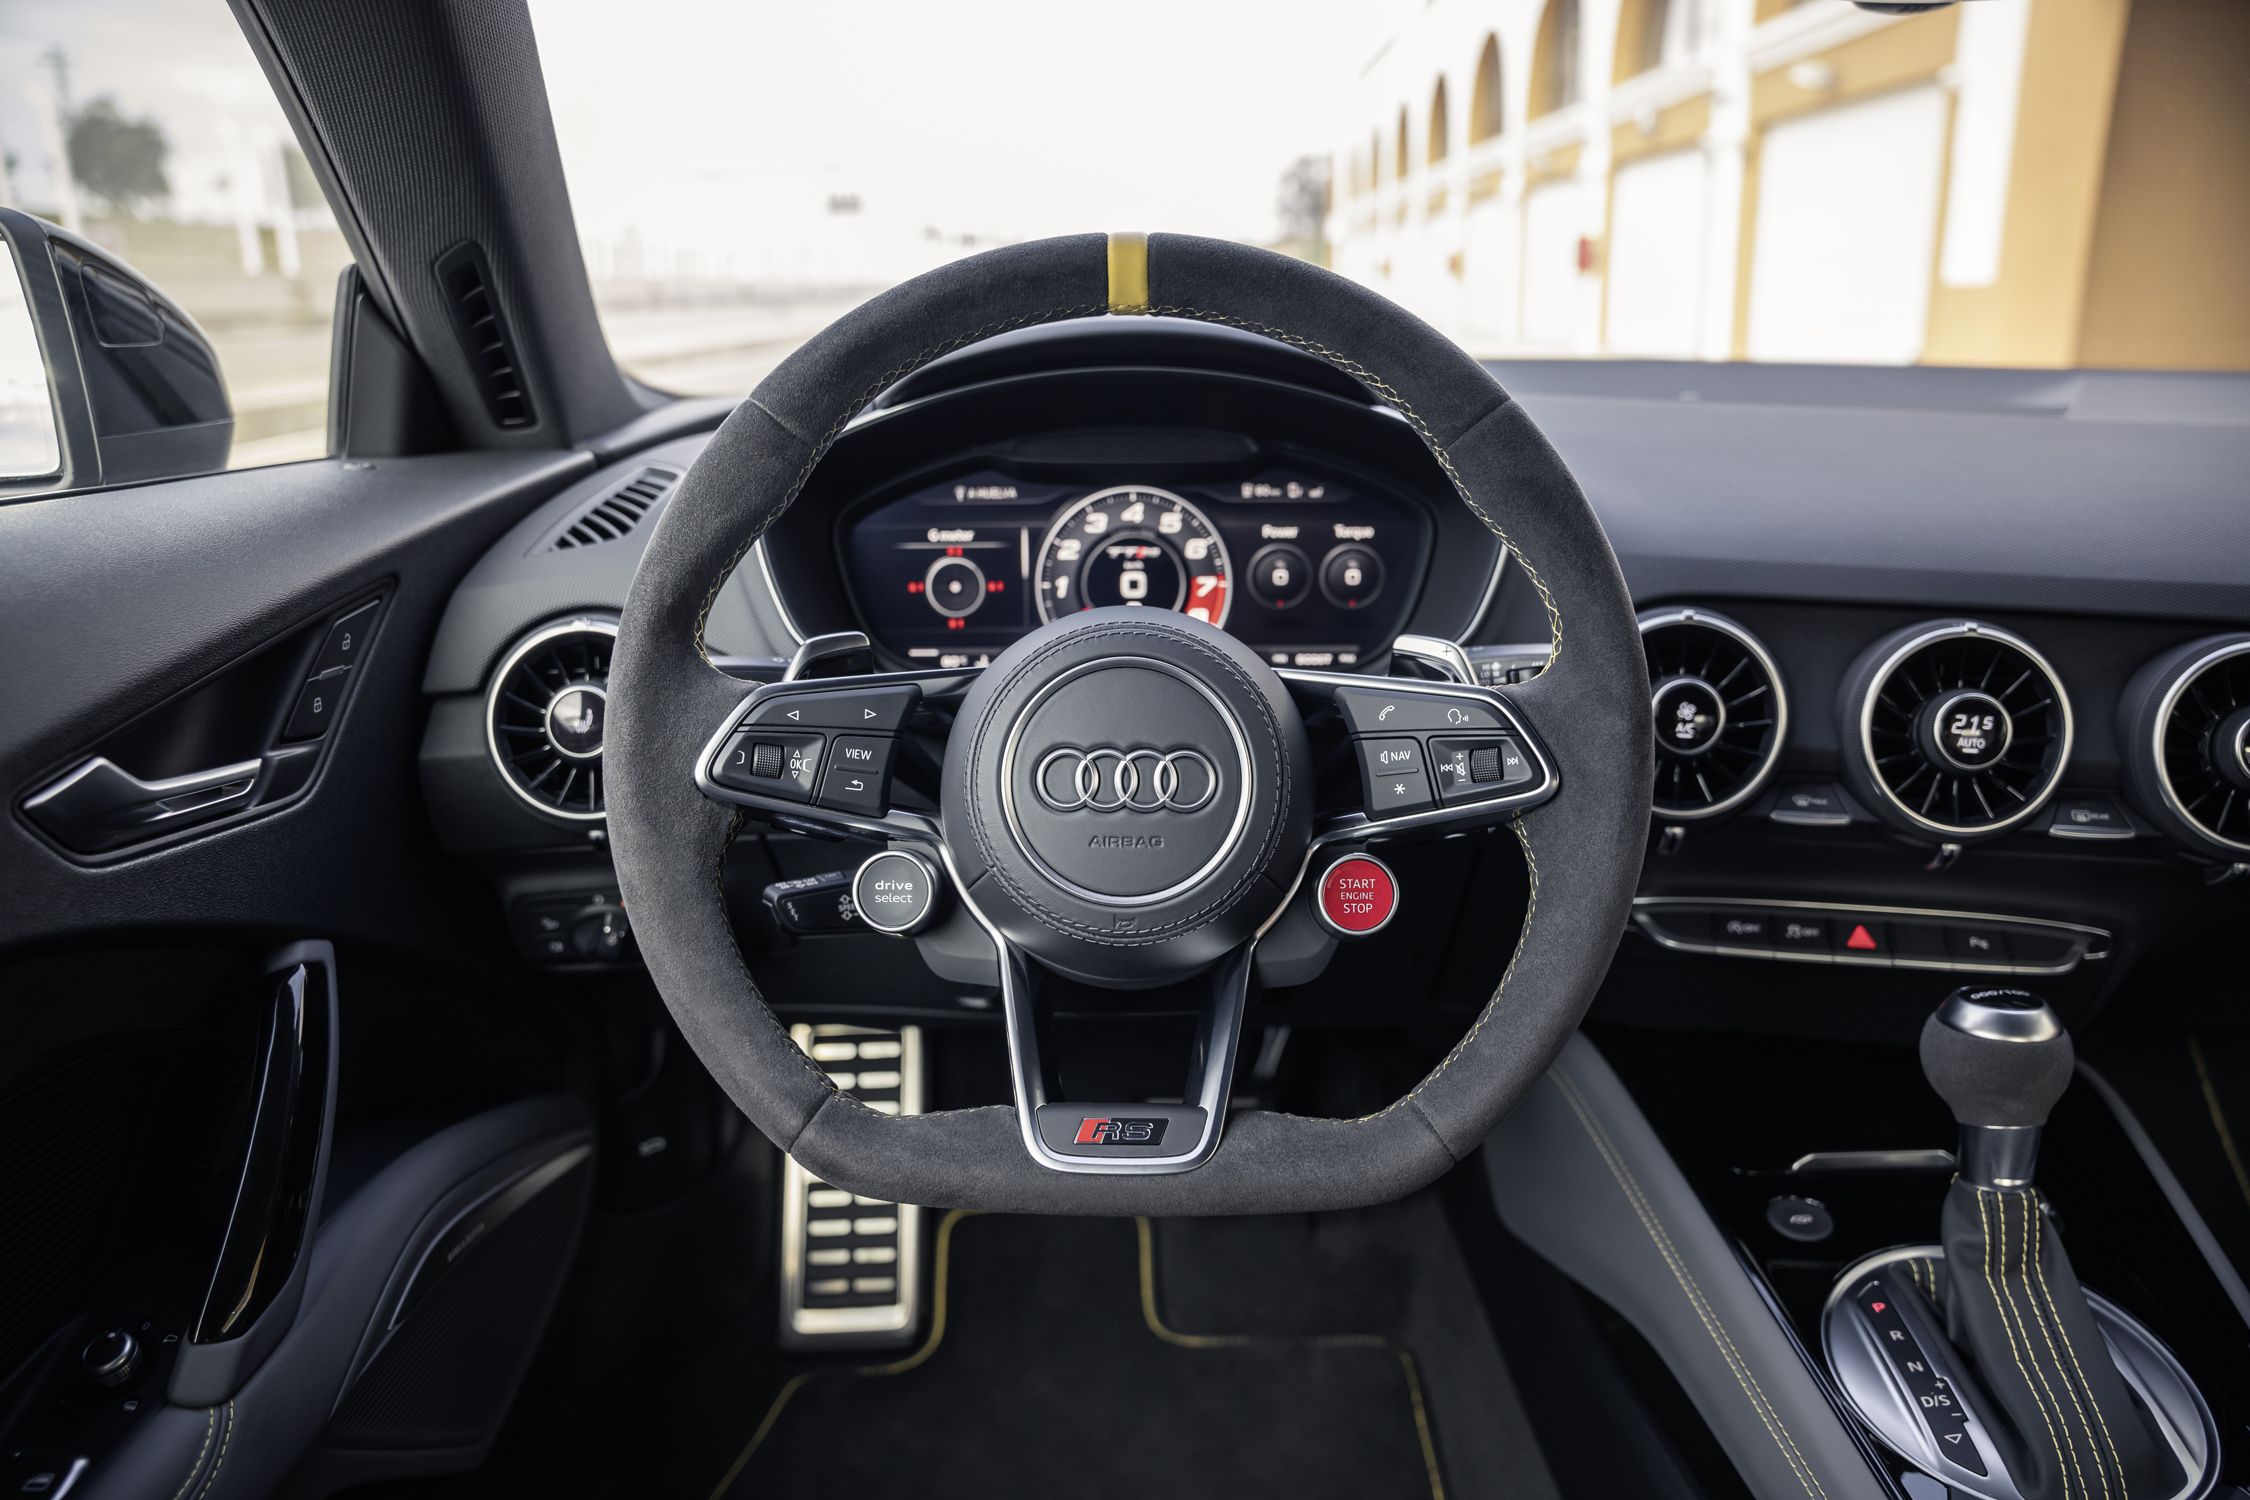 Audi TT encerra a produção - Foto: Divulgação